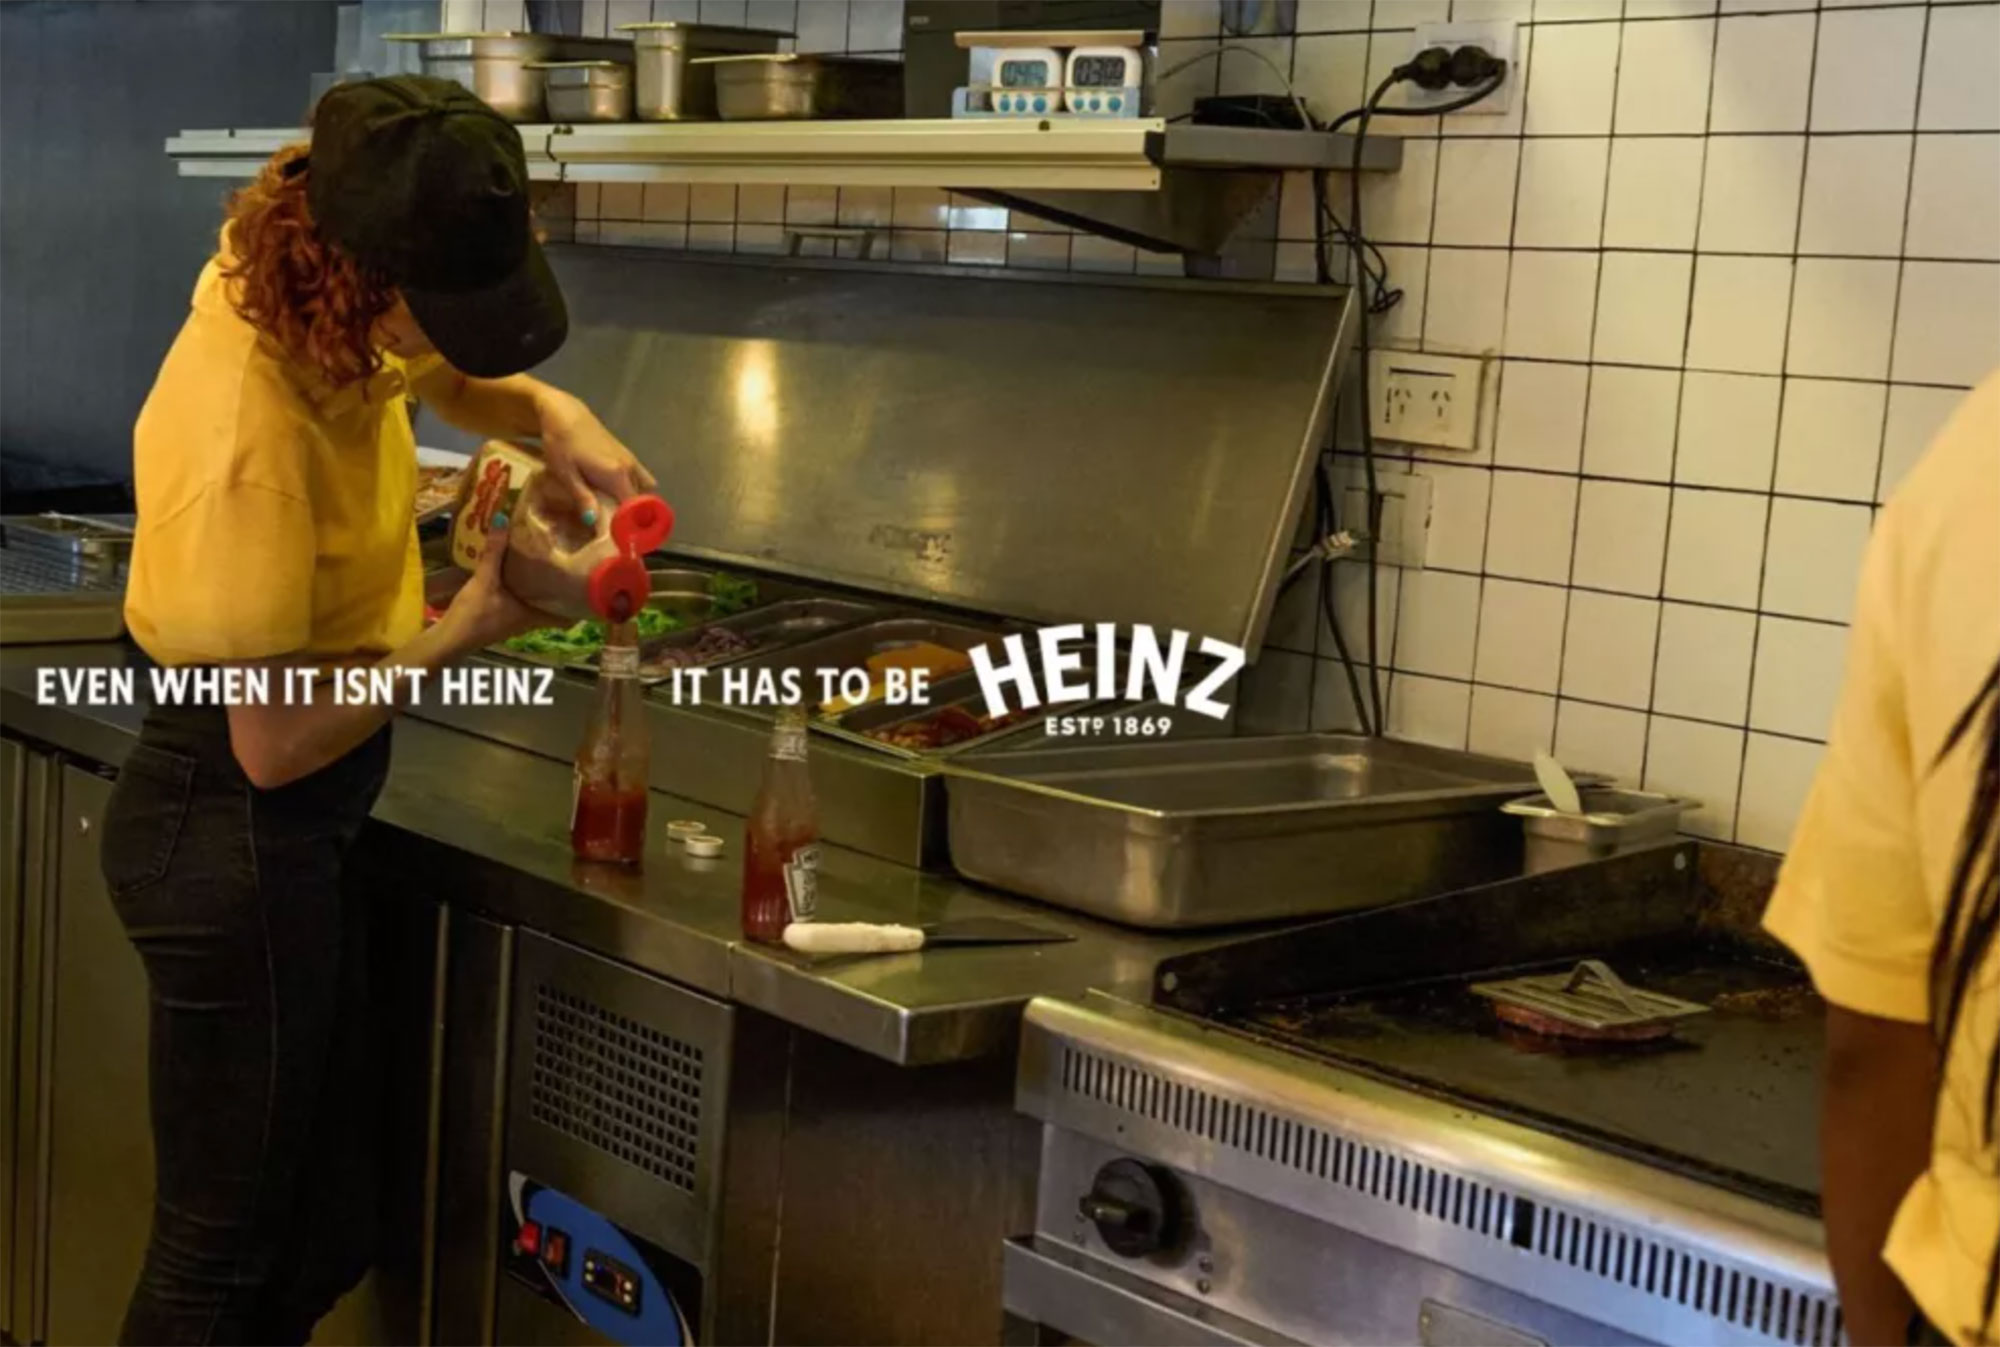 La campaña de Heinz para exponer a los restaurantes que rellenan las botellas de catsup